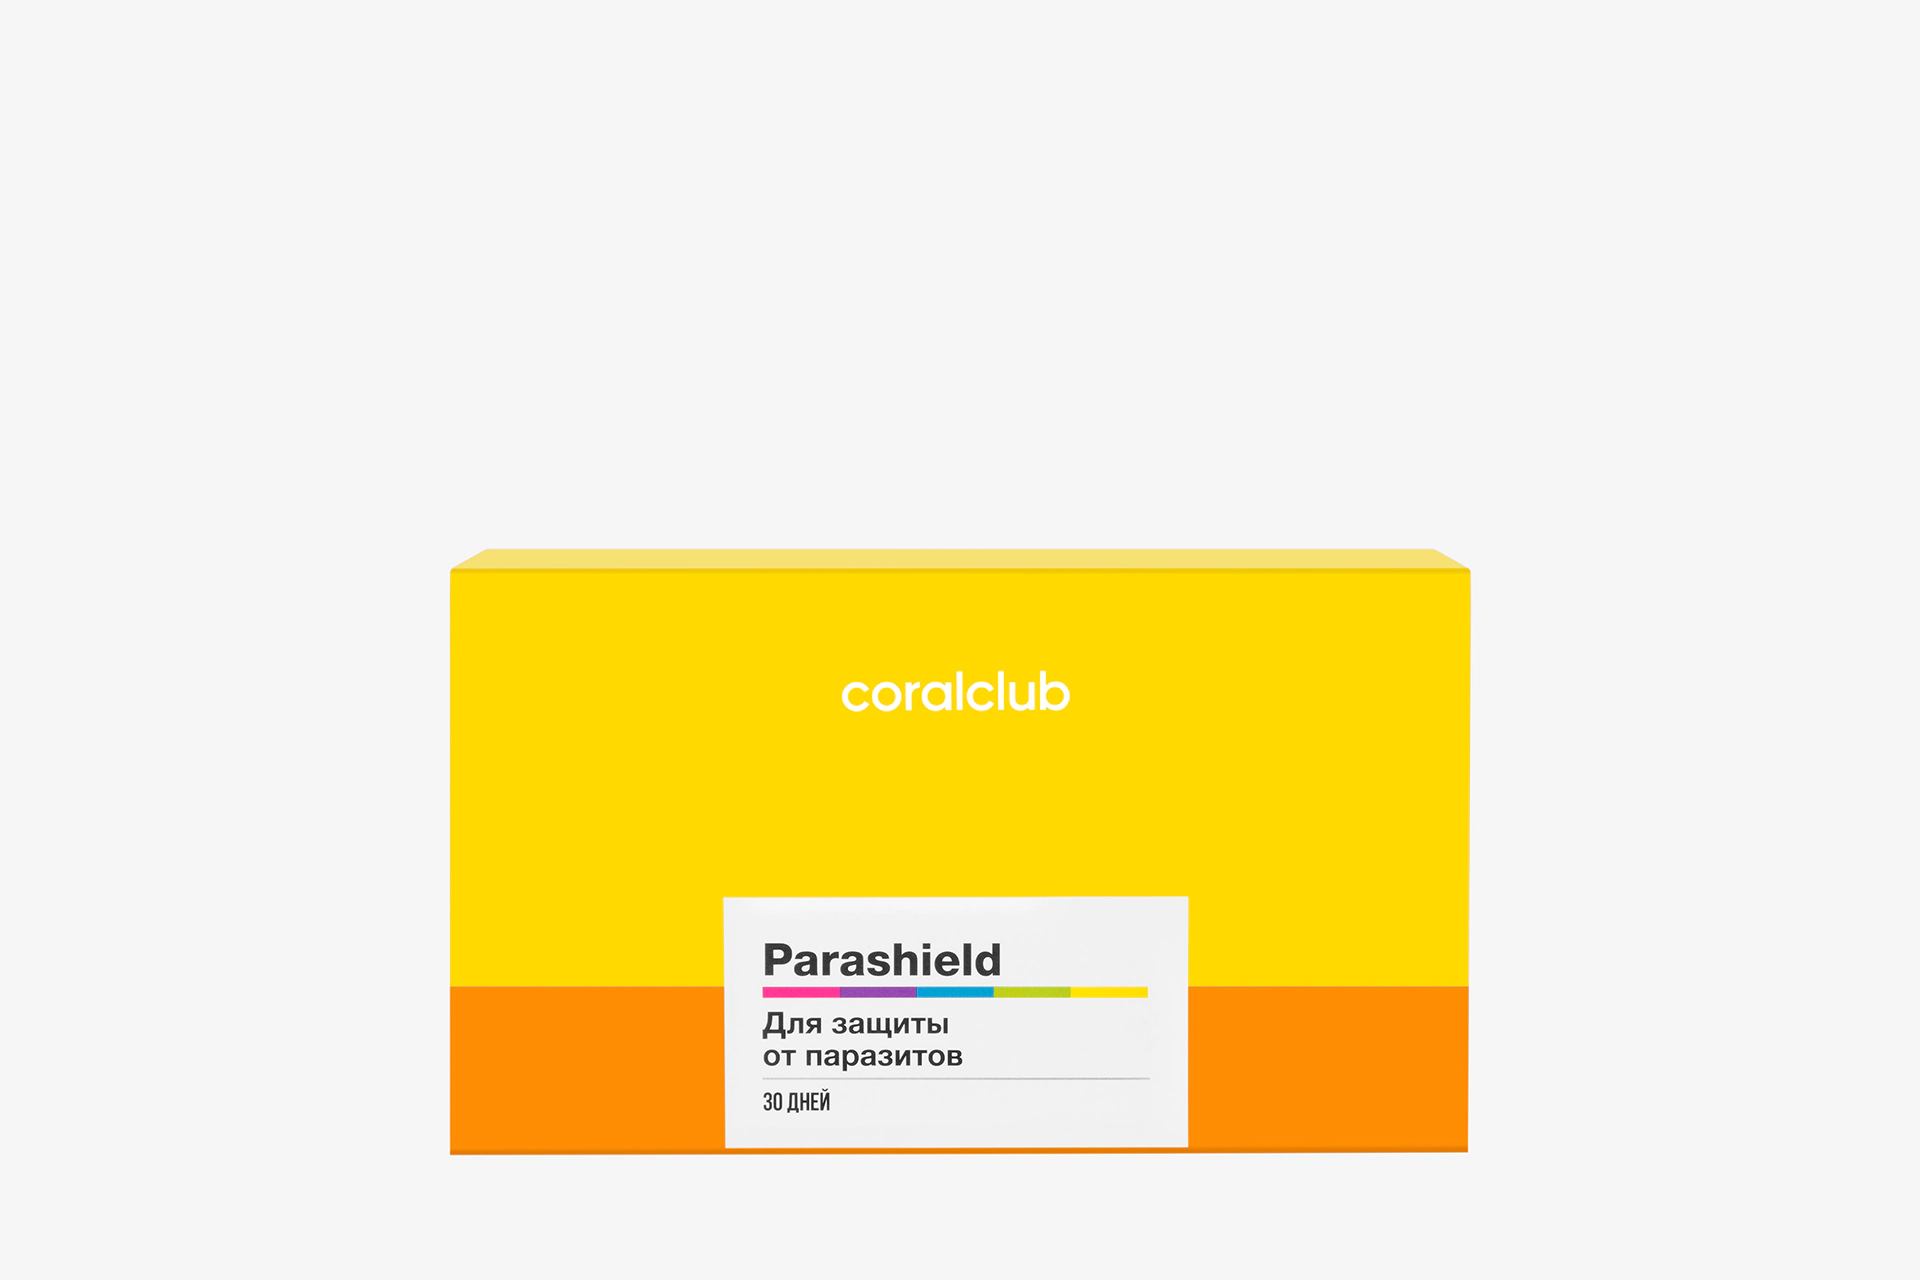 Parashield